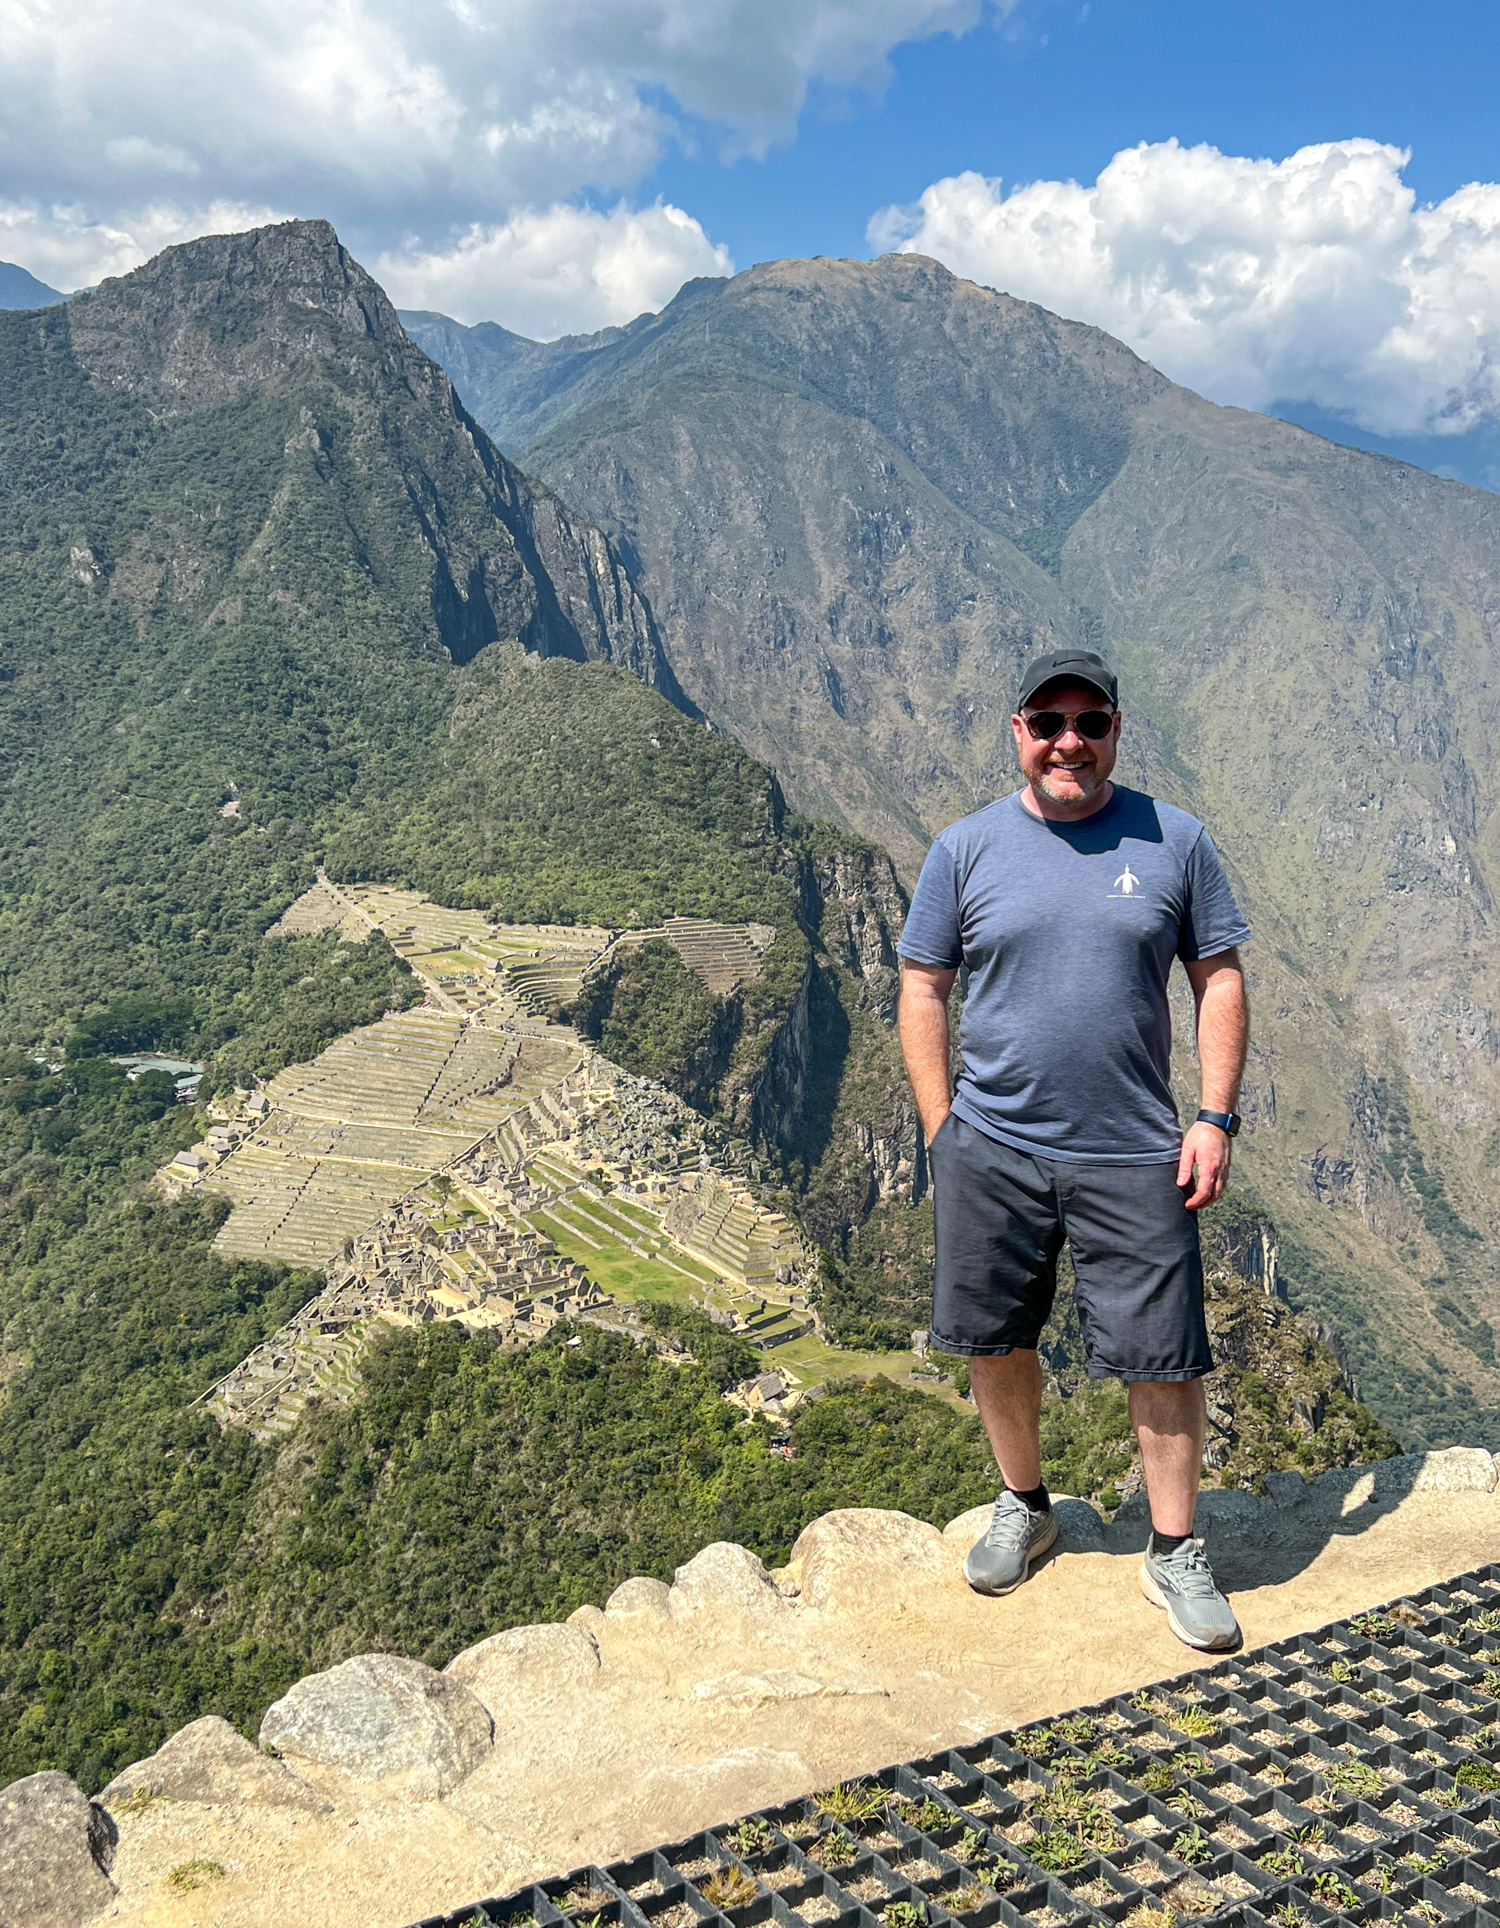 Dave in Peru standing atop Huayna Picchu with Machu Picchu below.